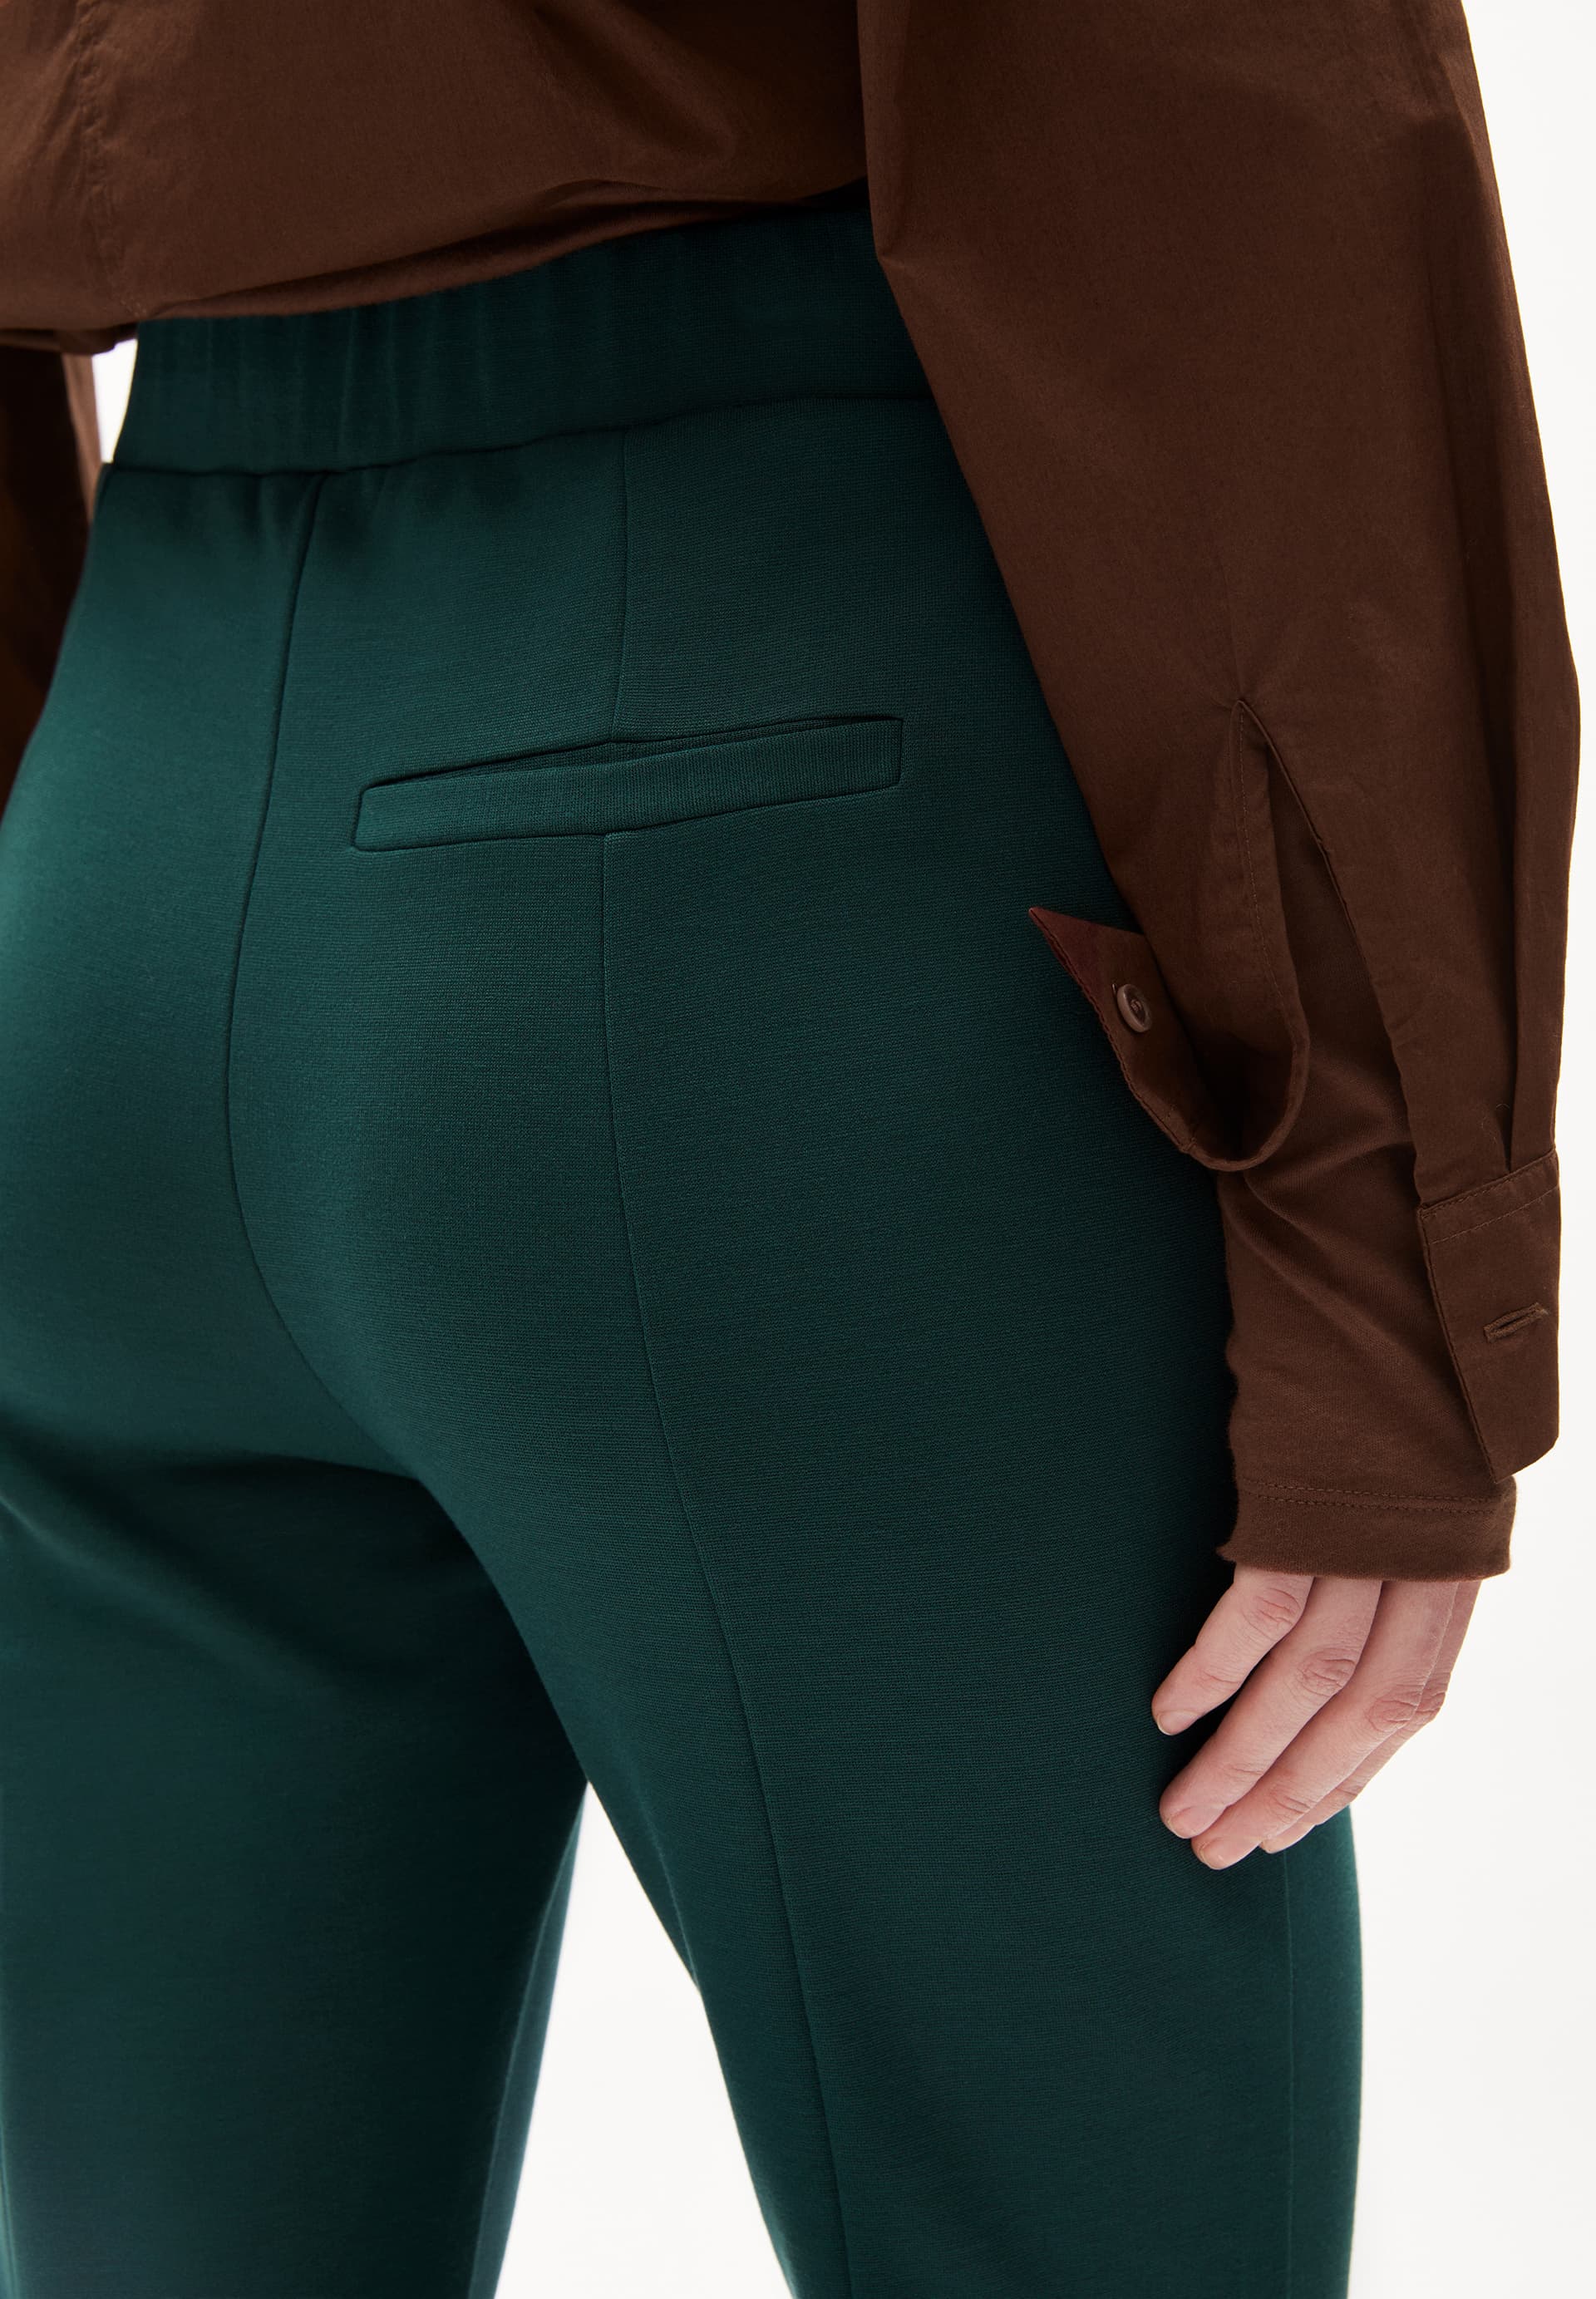 LEYLAARI Jersey Pants made of LENZING™ ECOVERO™ Mix